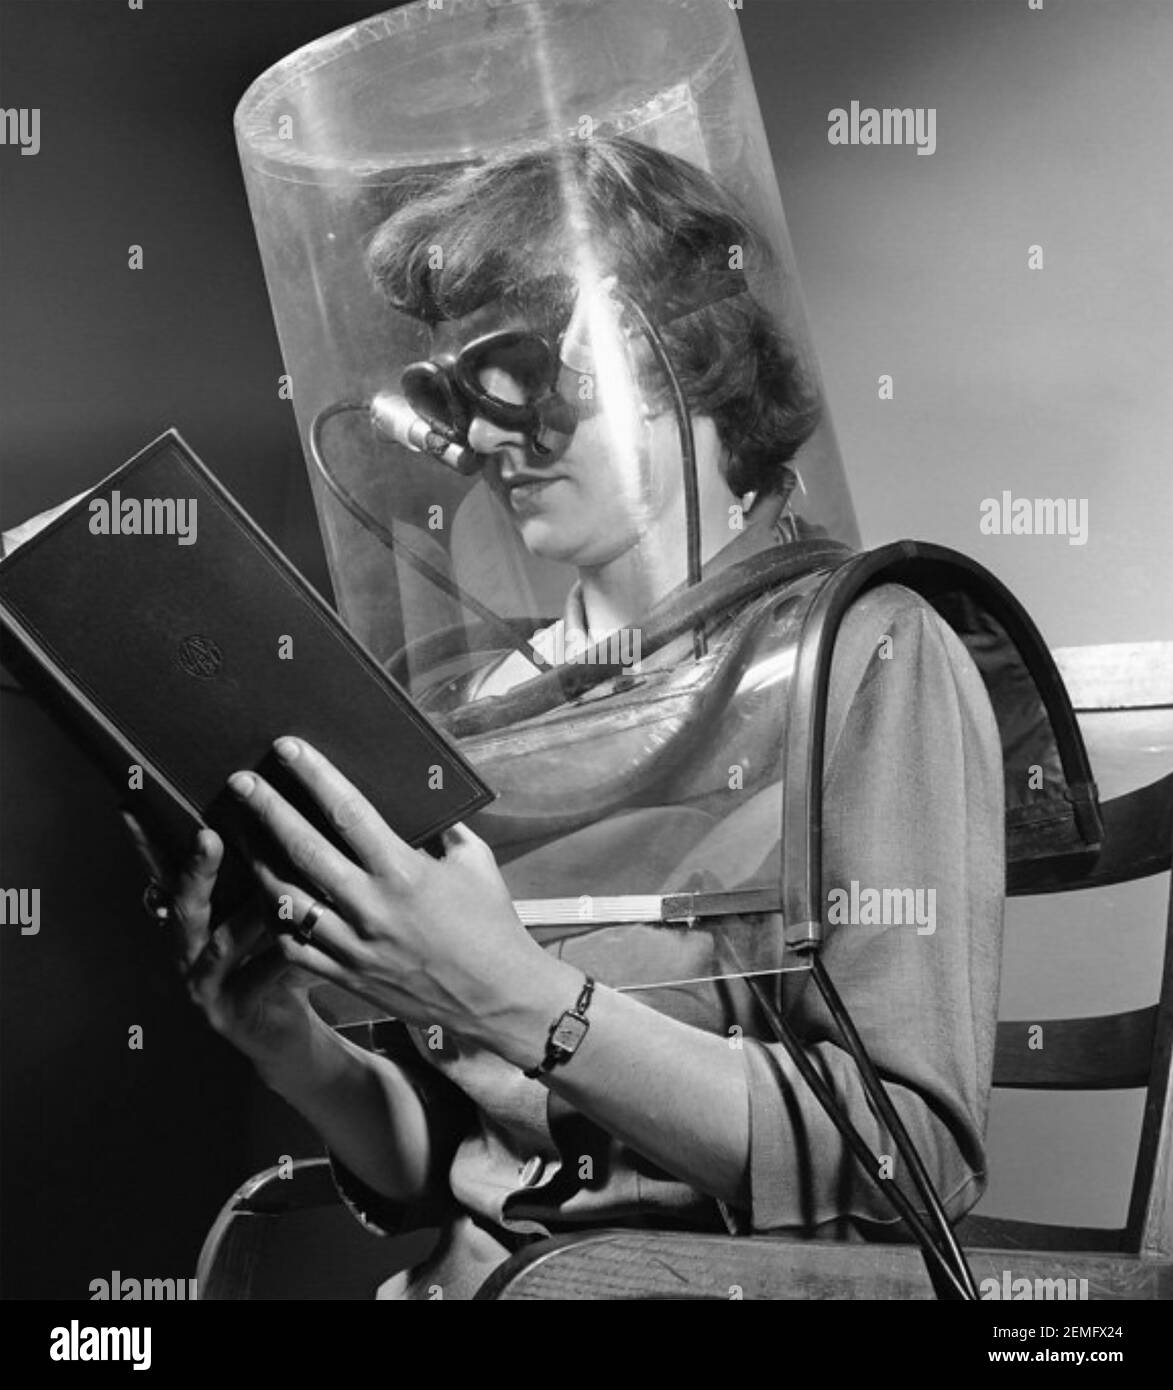 SMOG-TEST 1949. Ein Laborant am Stanford Research Institute in Kalifornien macht einen "Blink-Test" im Rahmen eines Projekts, um die Auswirkungen von Smog zu untersuchen. Stockfoto